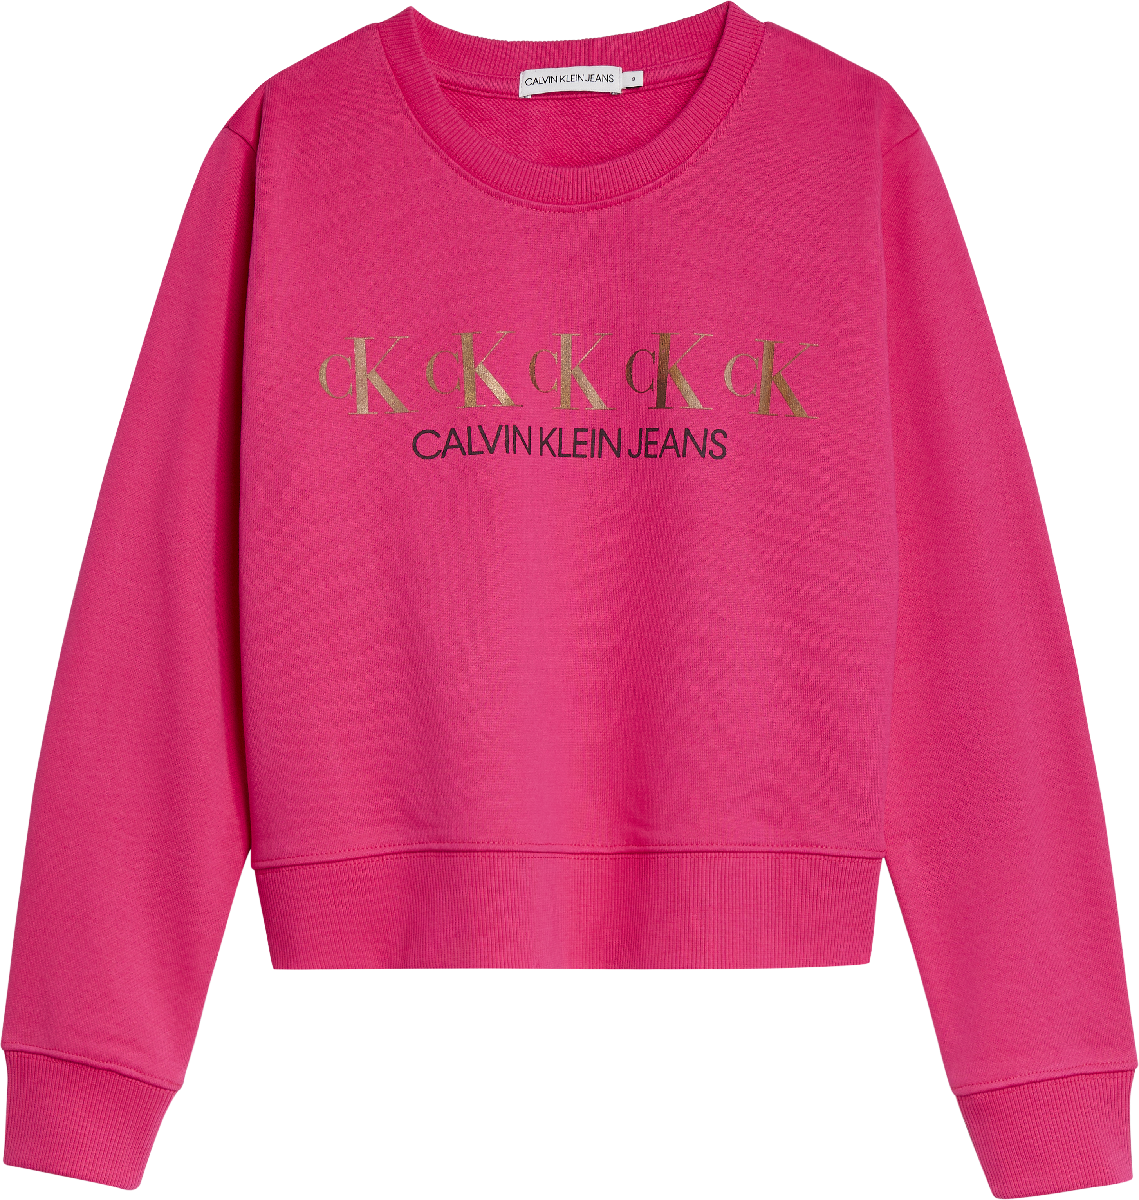 Meisjes CK REPEAT FOIL SWEATER van Calvin Klein in de kleur Hot Magenta in maat 176.